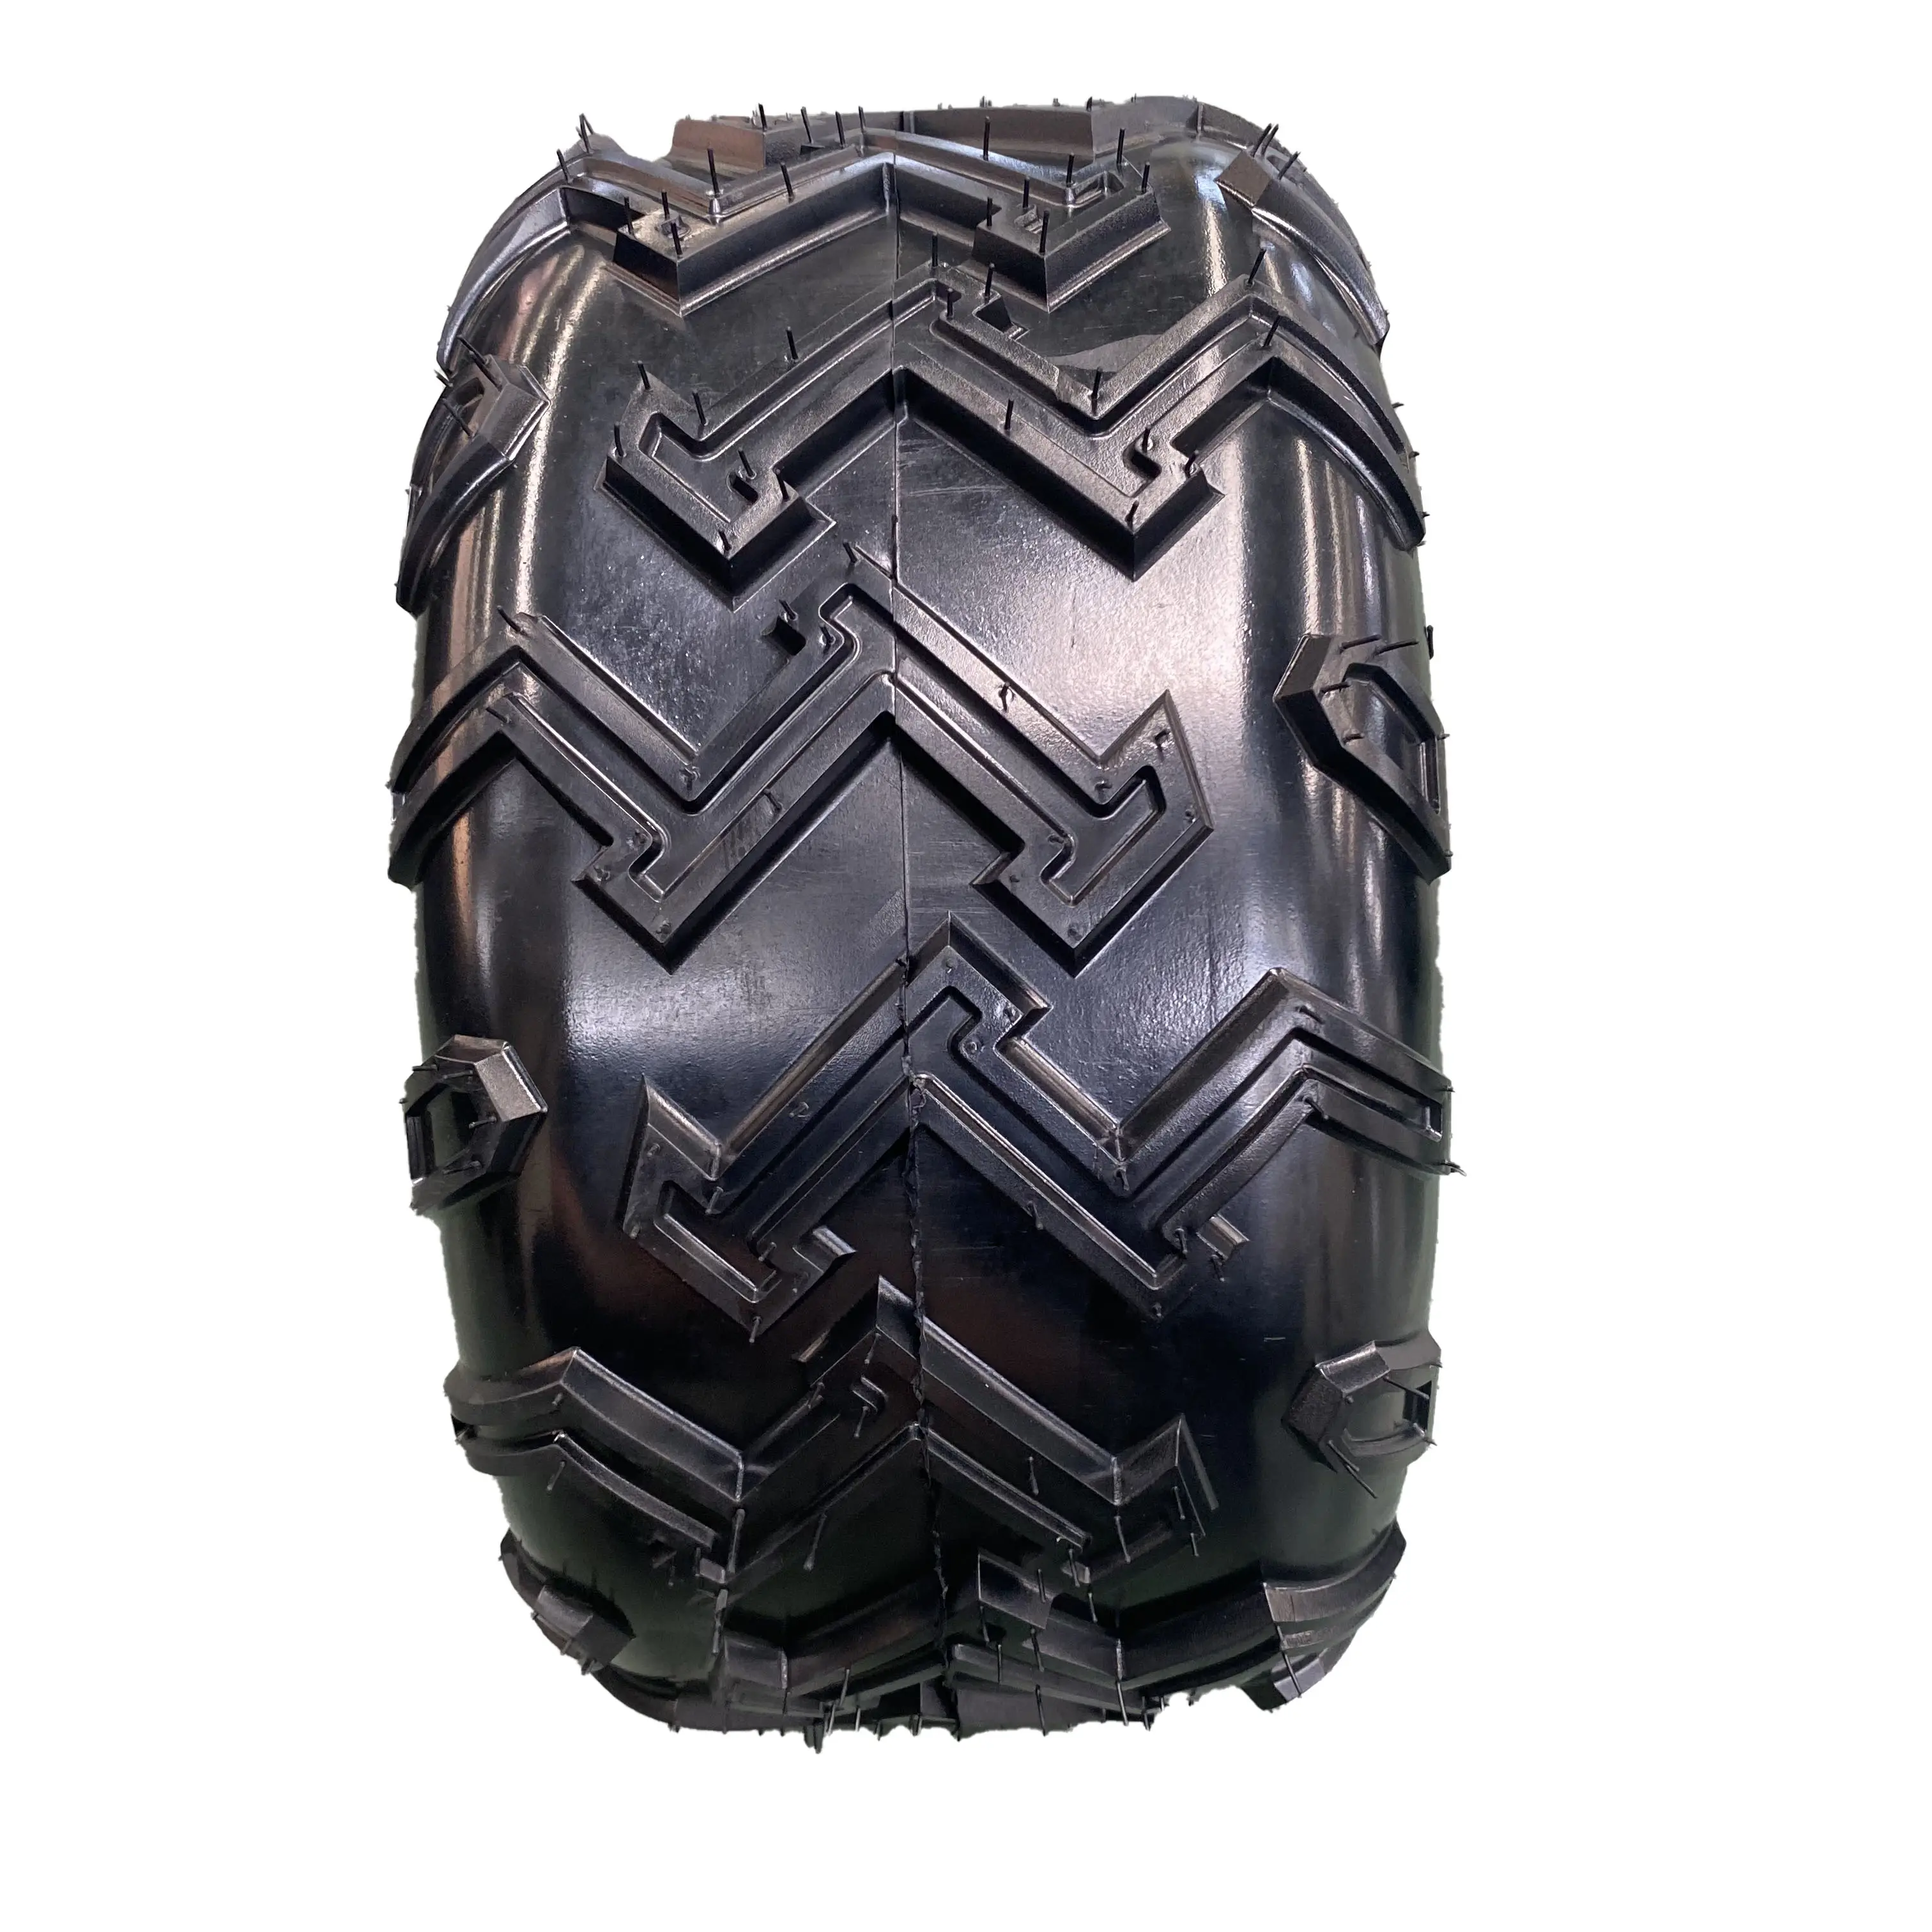 ATV pneumatici pneumatici vuoto fabbrica vendita diretta di accessori ATV vari tipi di pneumatici